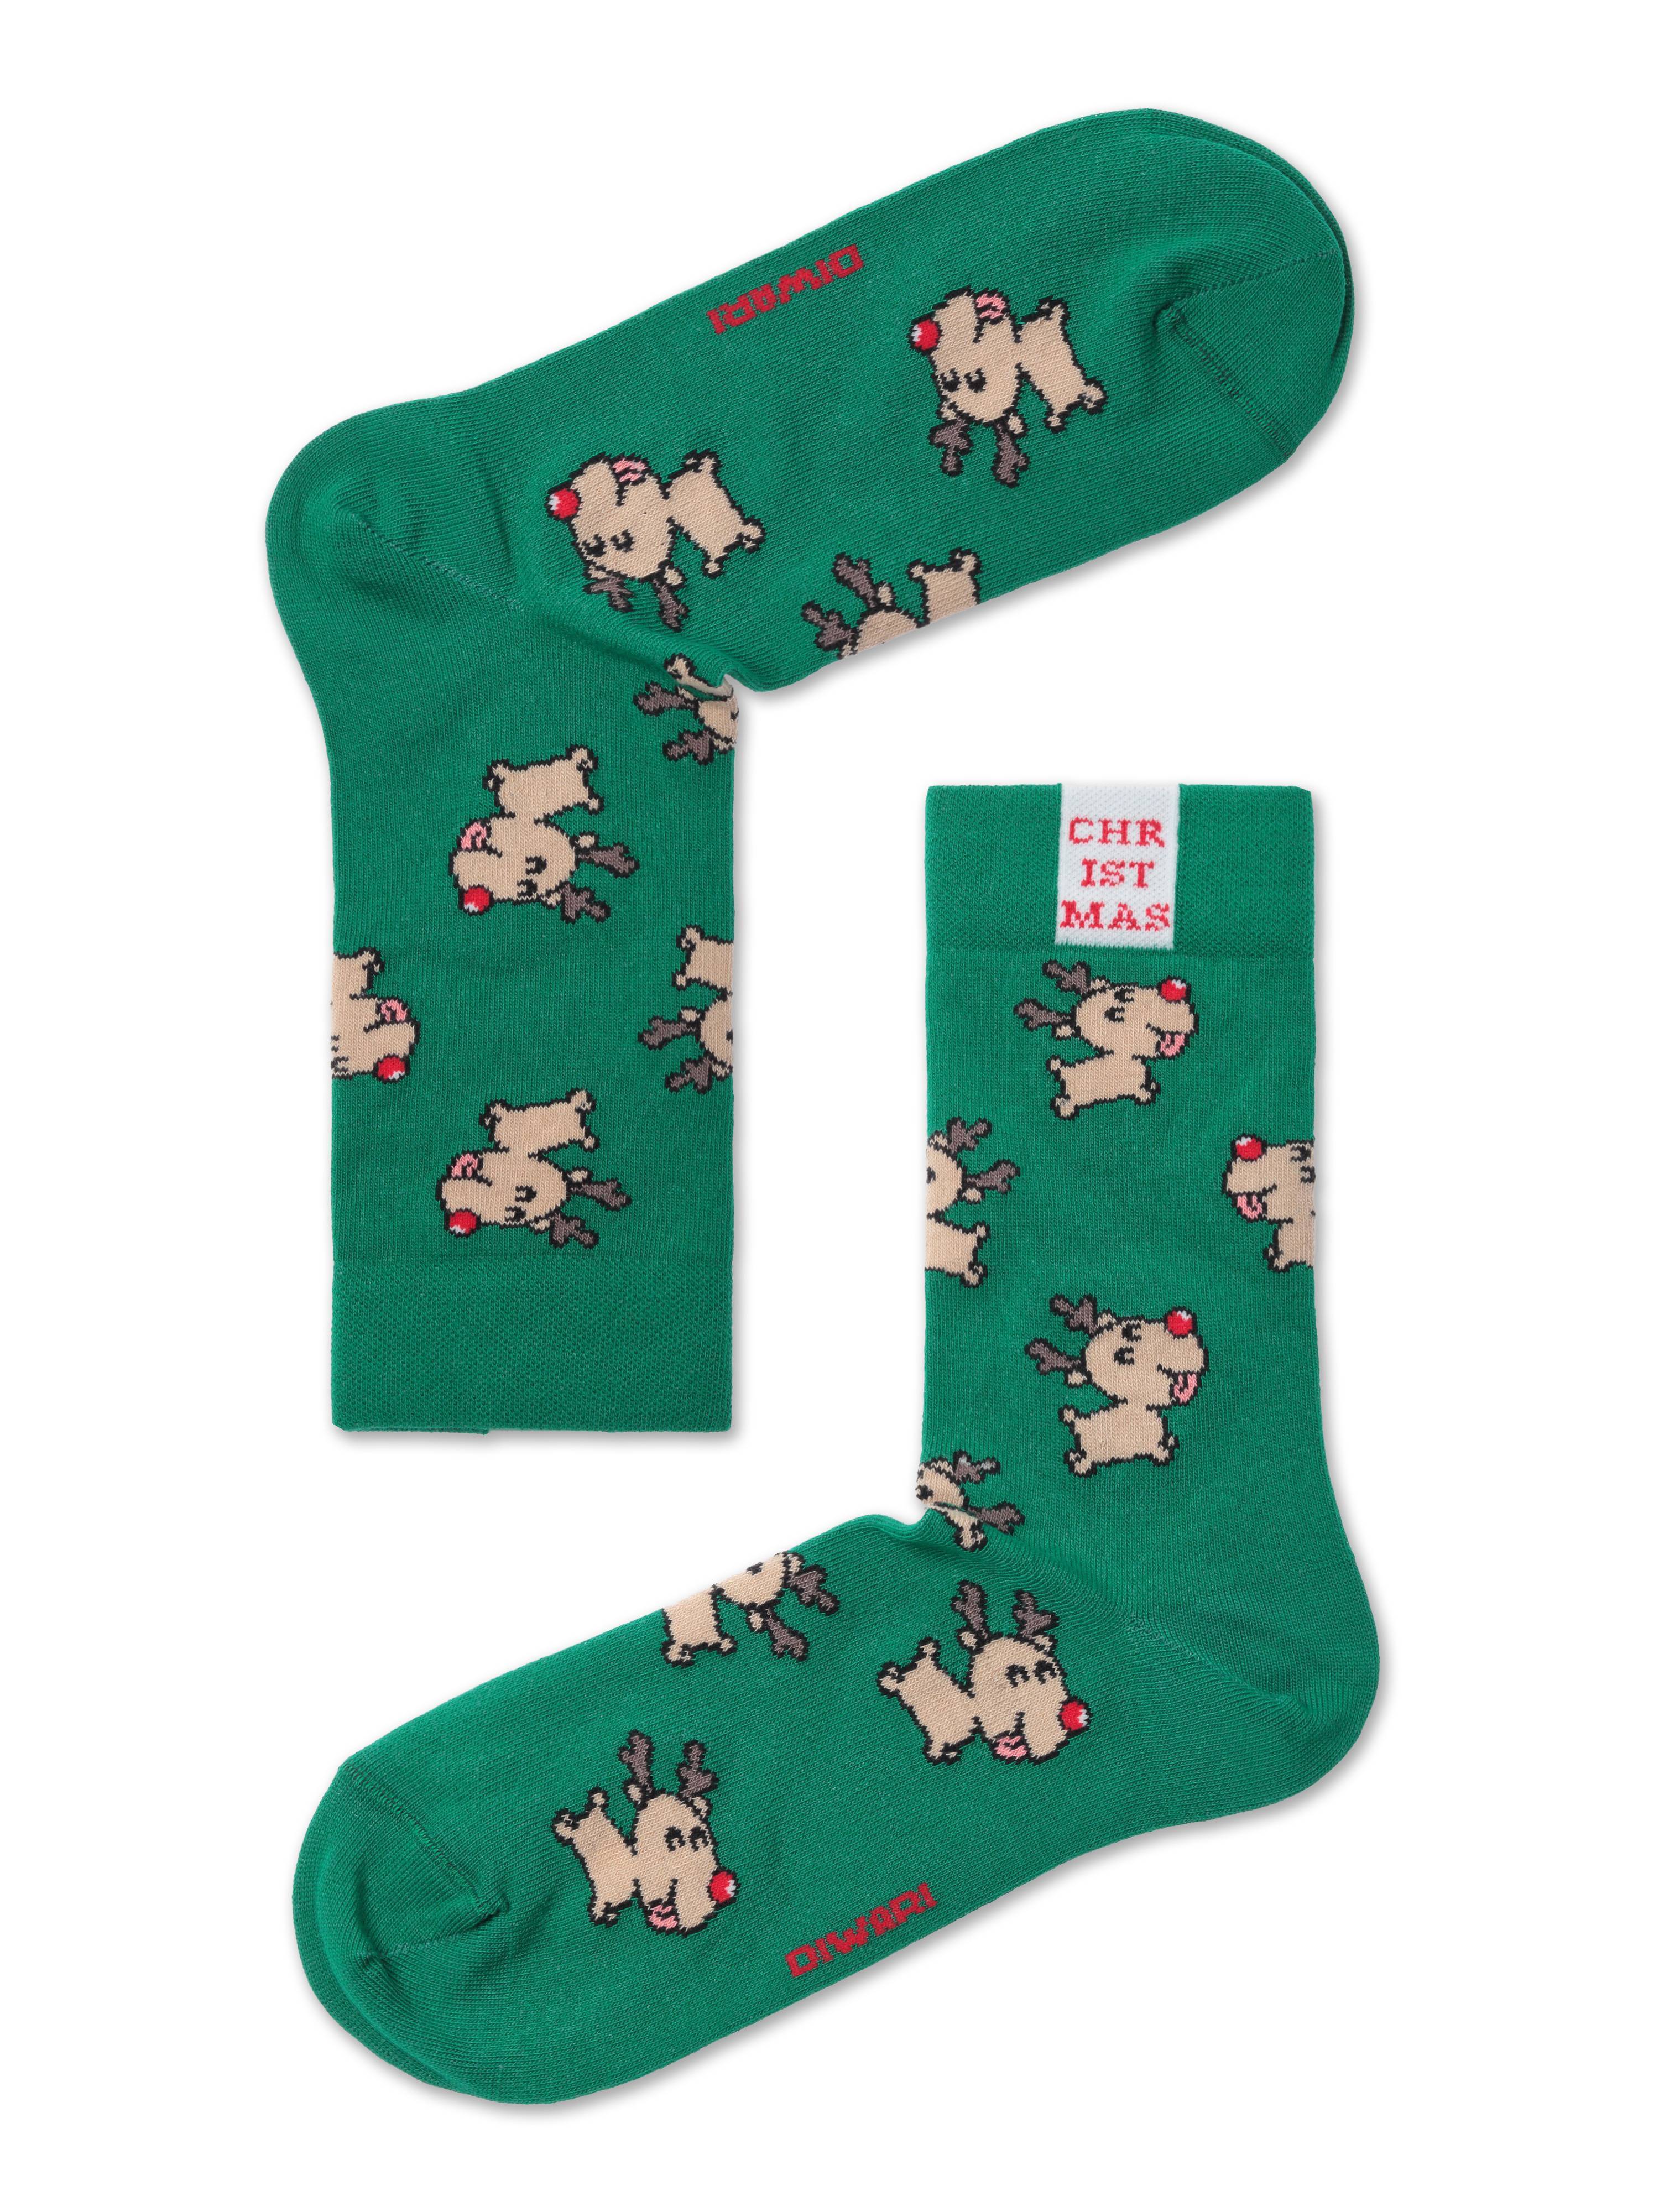 Новогодние носки «Rudolph» Conte ⭐️, цвет зеленый, размер 42-45